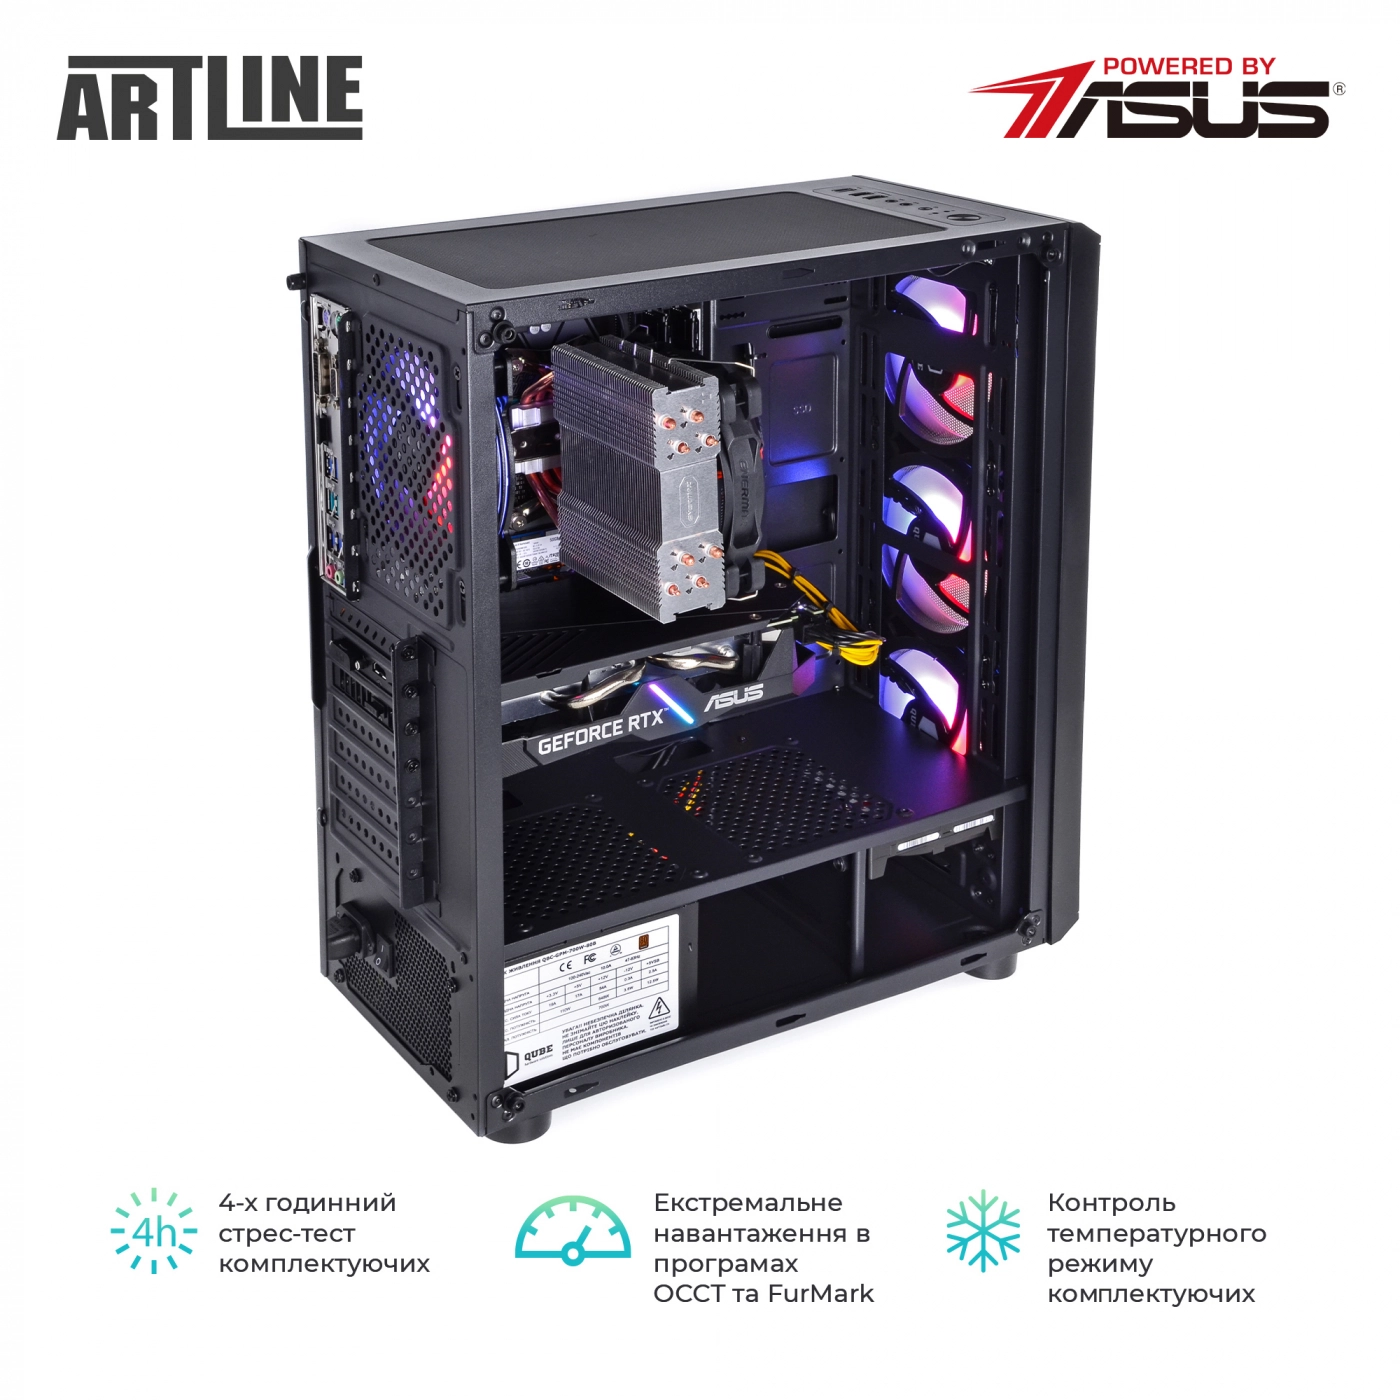 Купить Компьютер ARTLINE Gaming X55v44 - фото 9